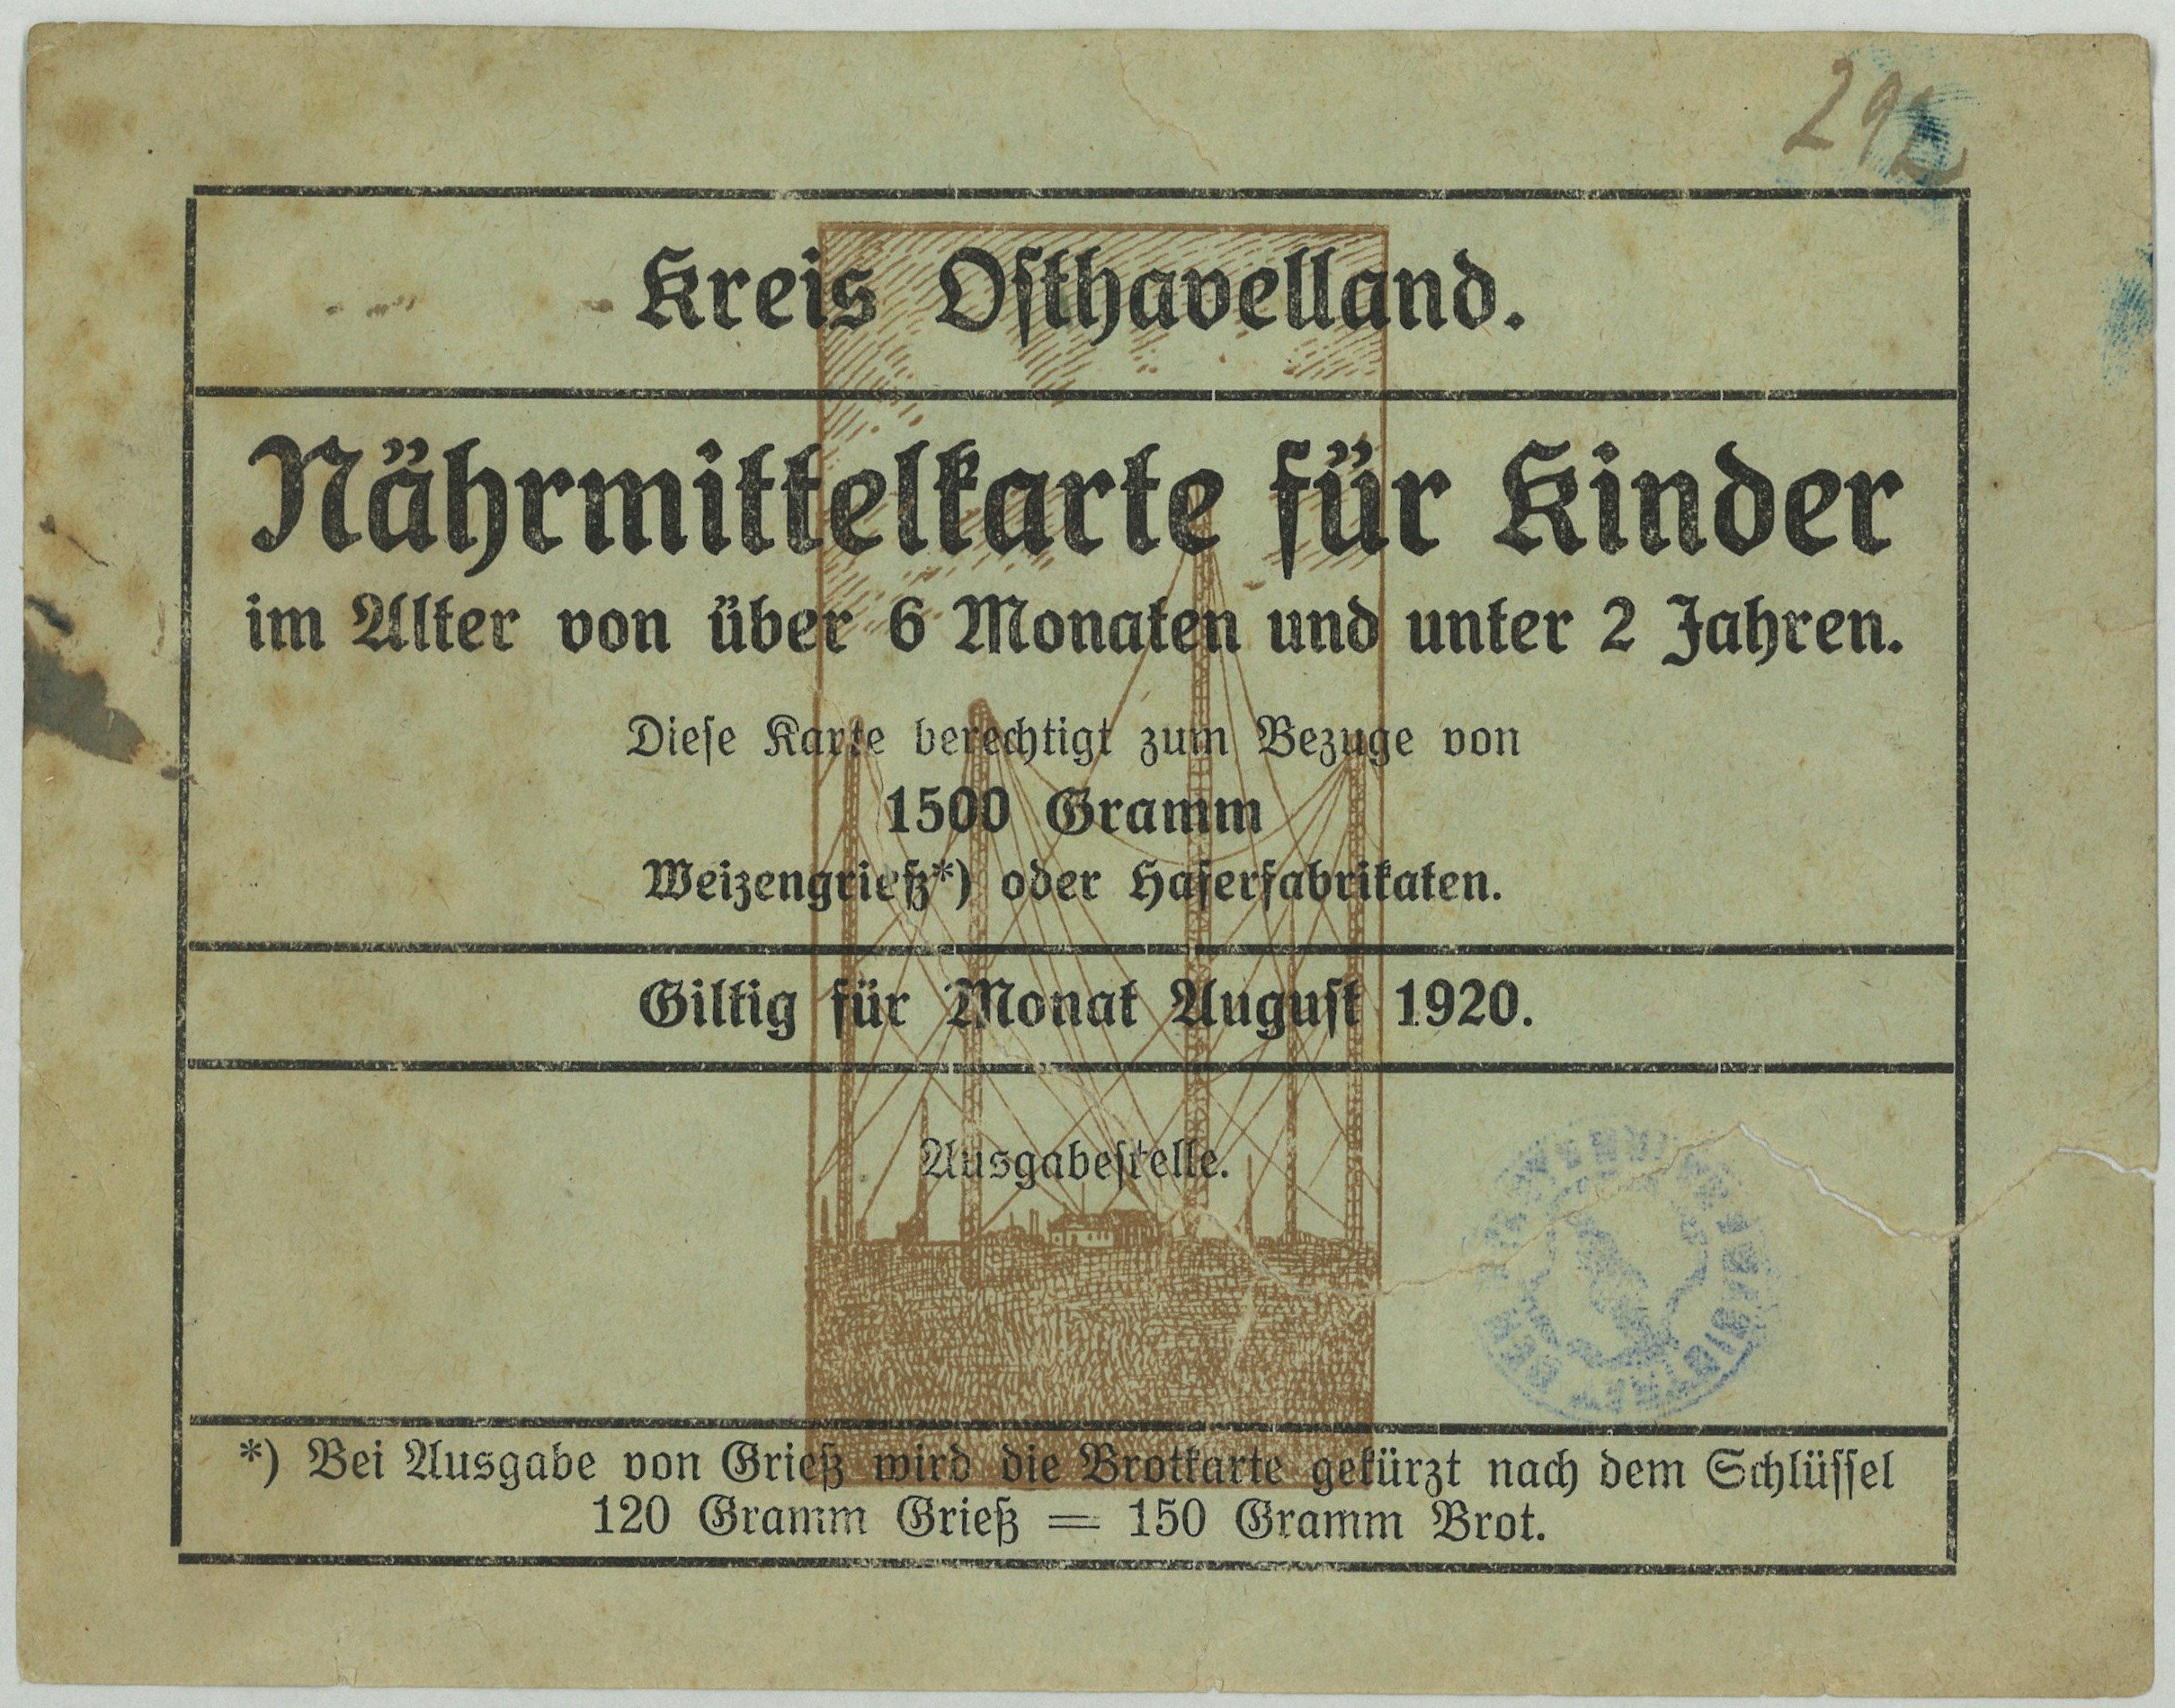 Kreis Osthavelland: Nährmittelkarte für Kinder 1920 (Landesgeschichtliche Vereinigung für die Mark Brandenburg e.V., Archiv CC BY)